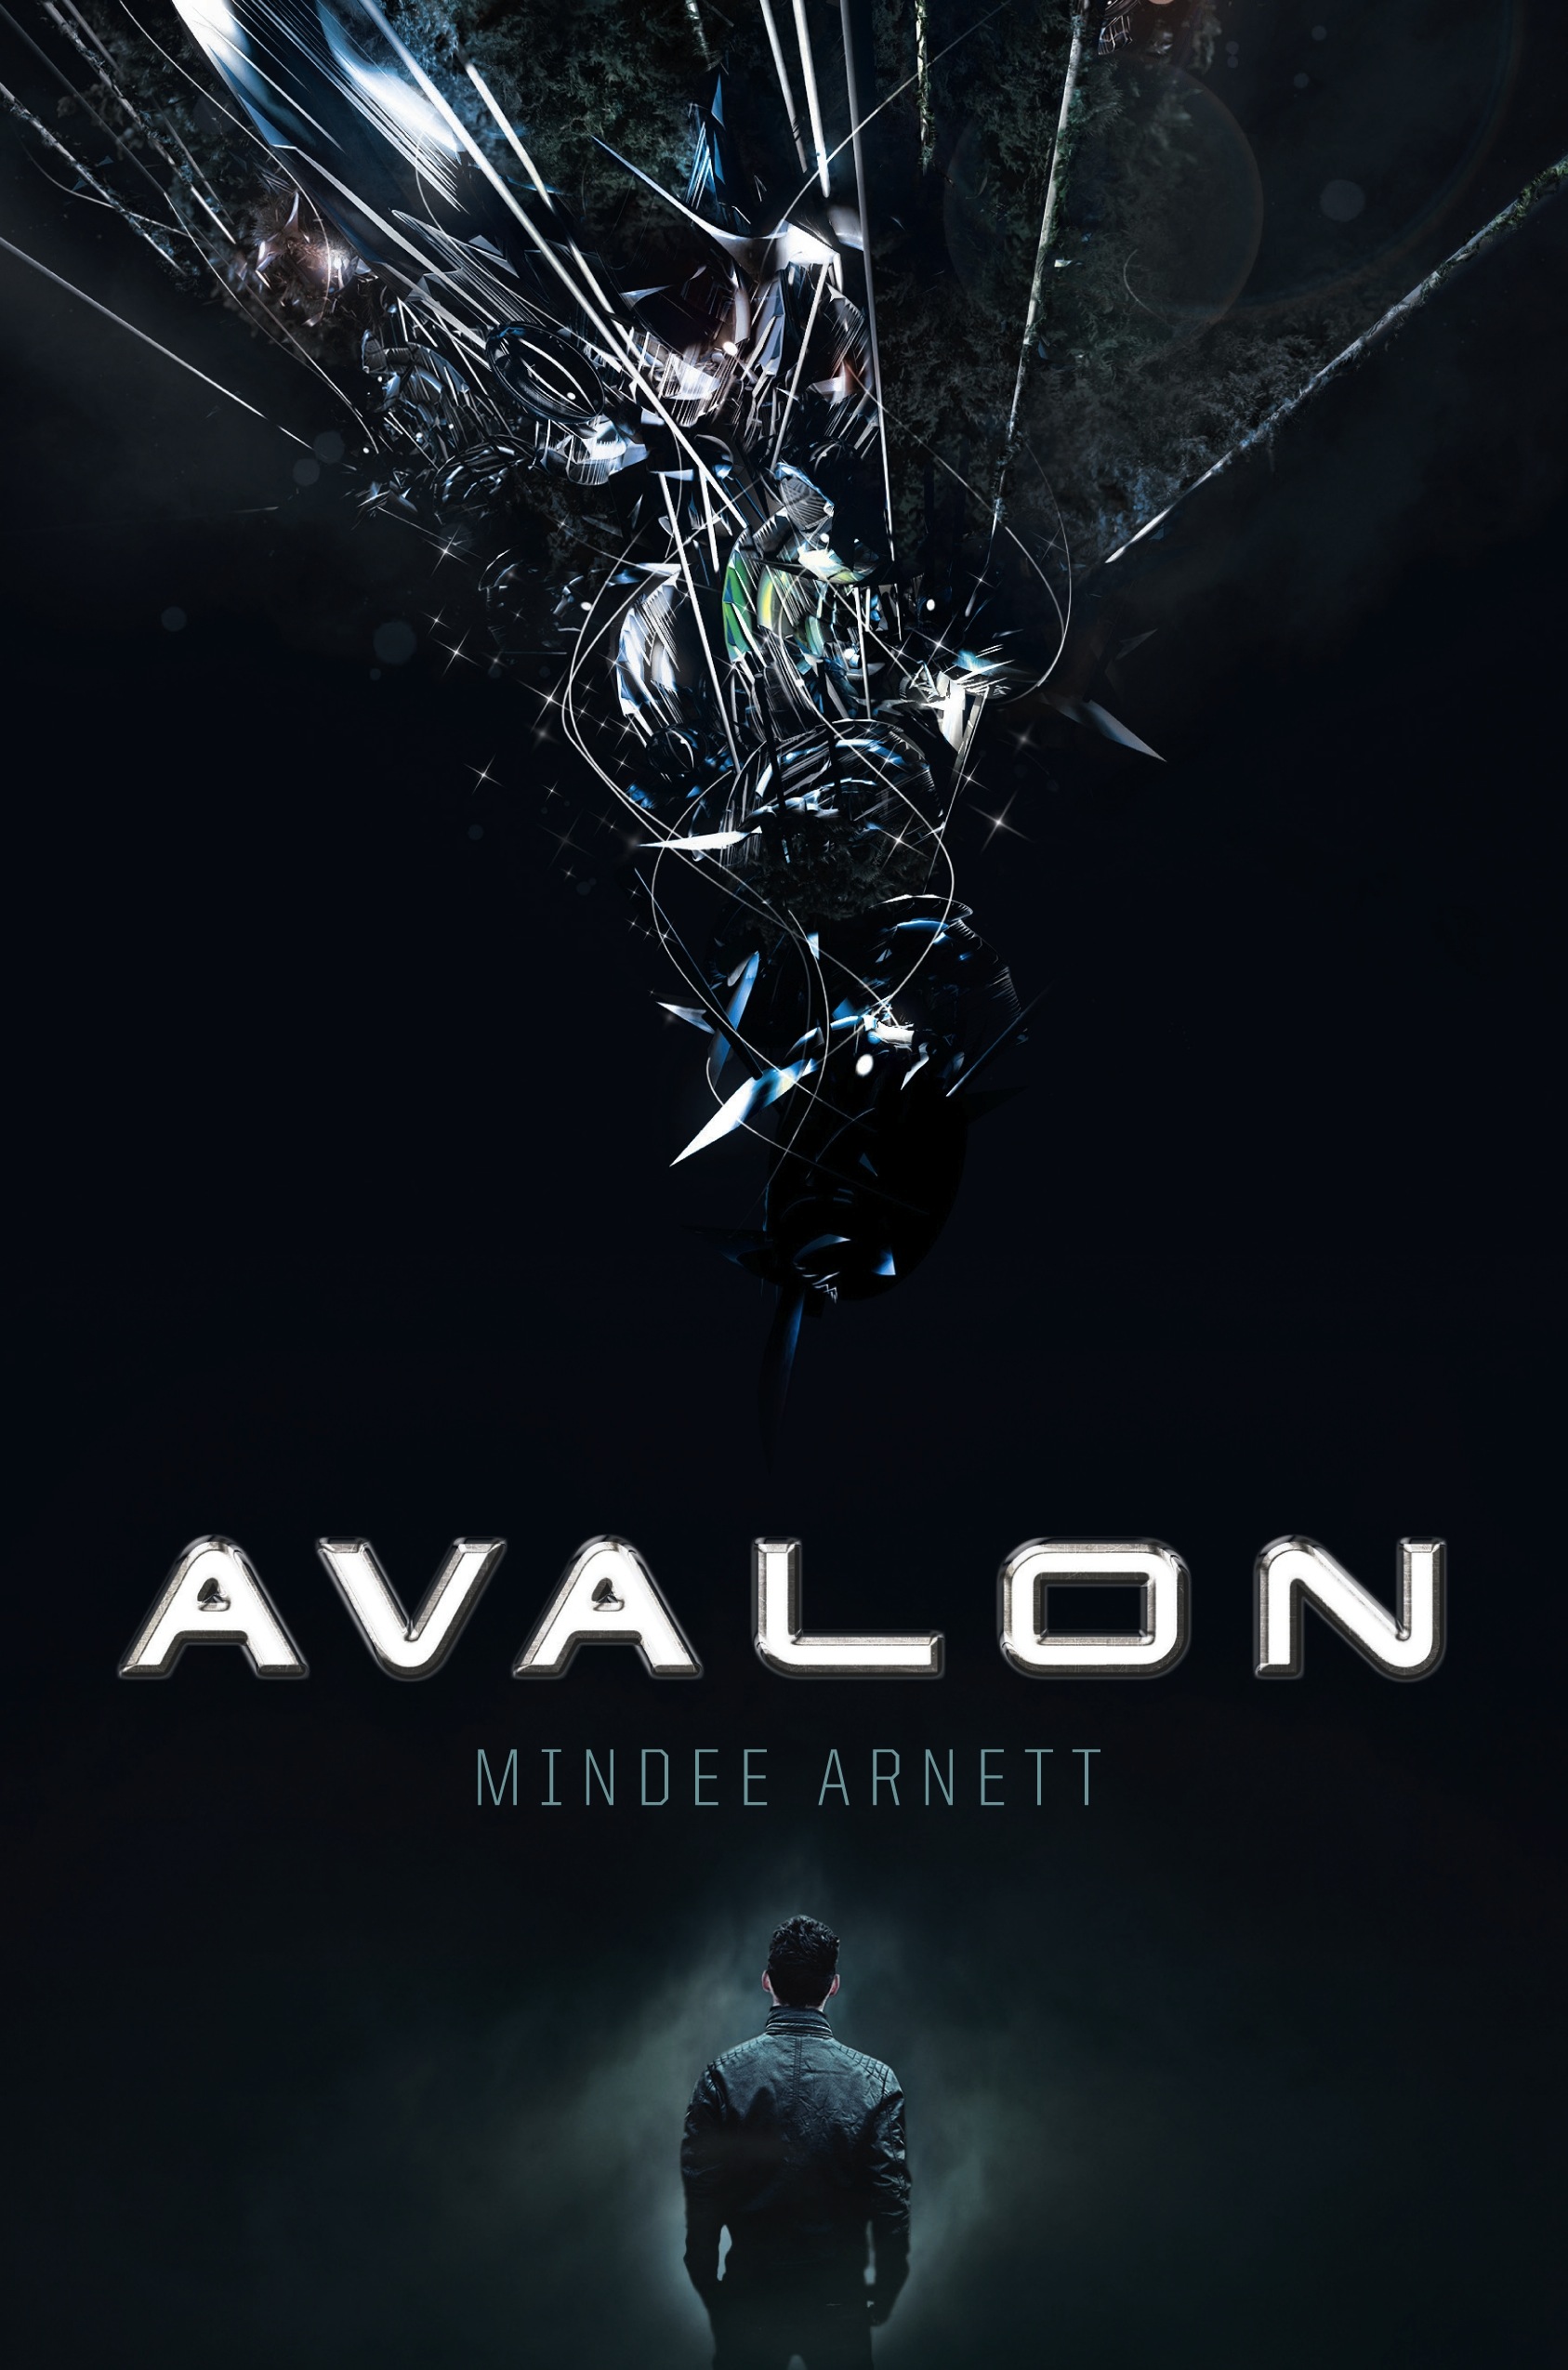 Avalon by Mindee Arnett